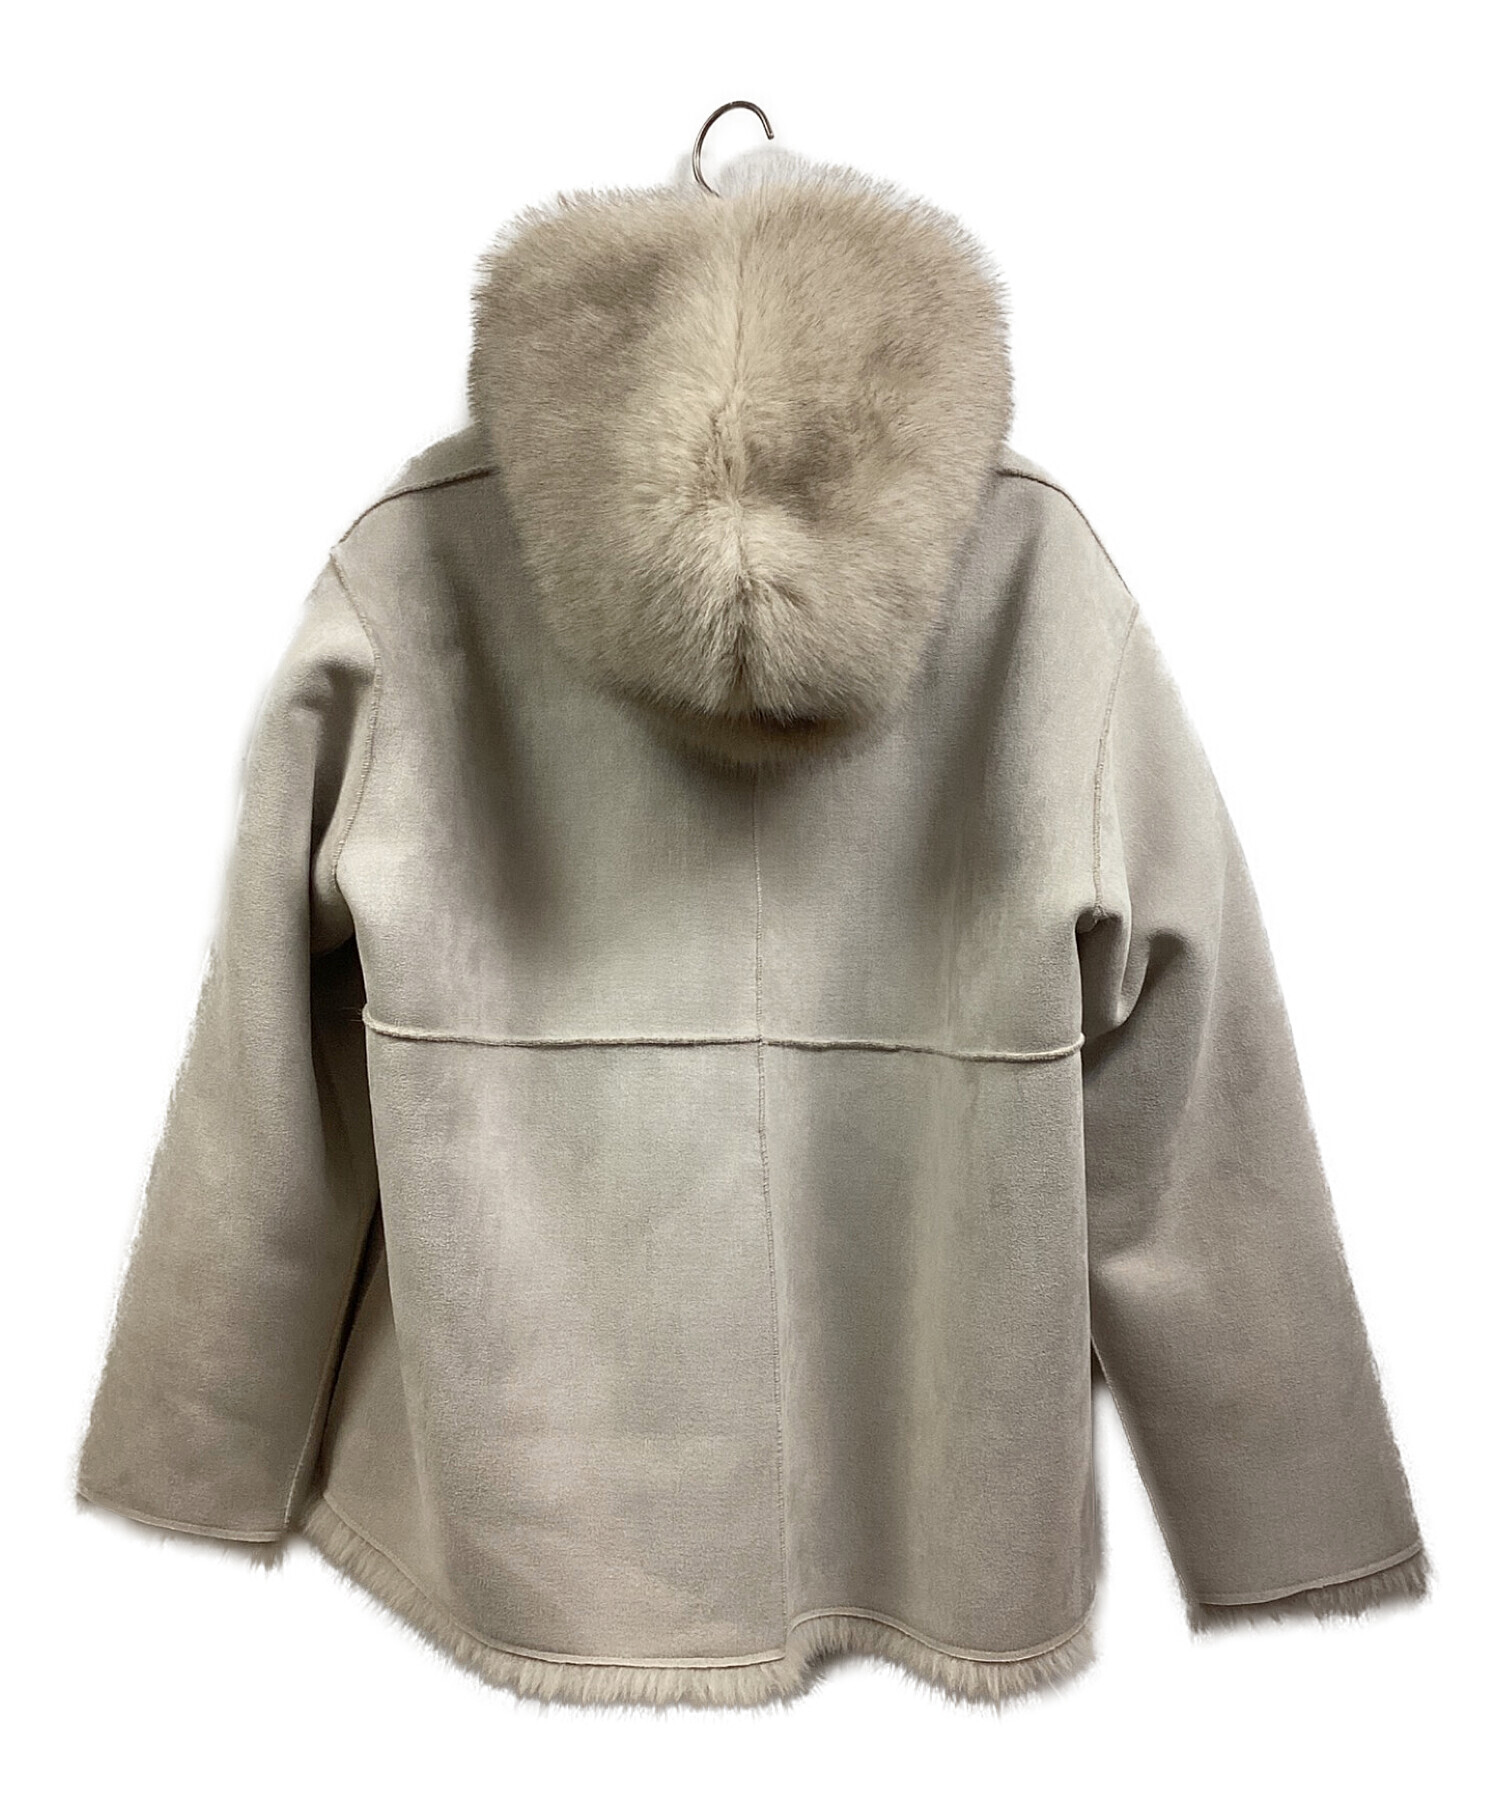 THINK FUR (シンクファー) Gradation Fur Foody Jacket ベージュ サイズ:free